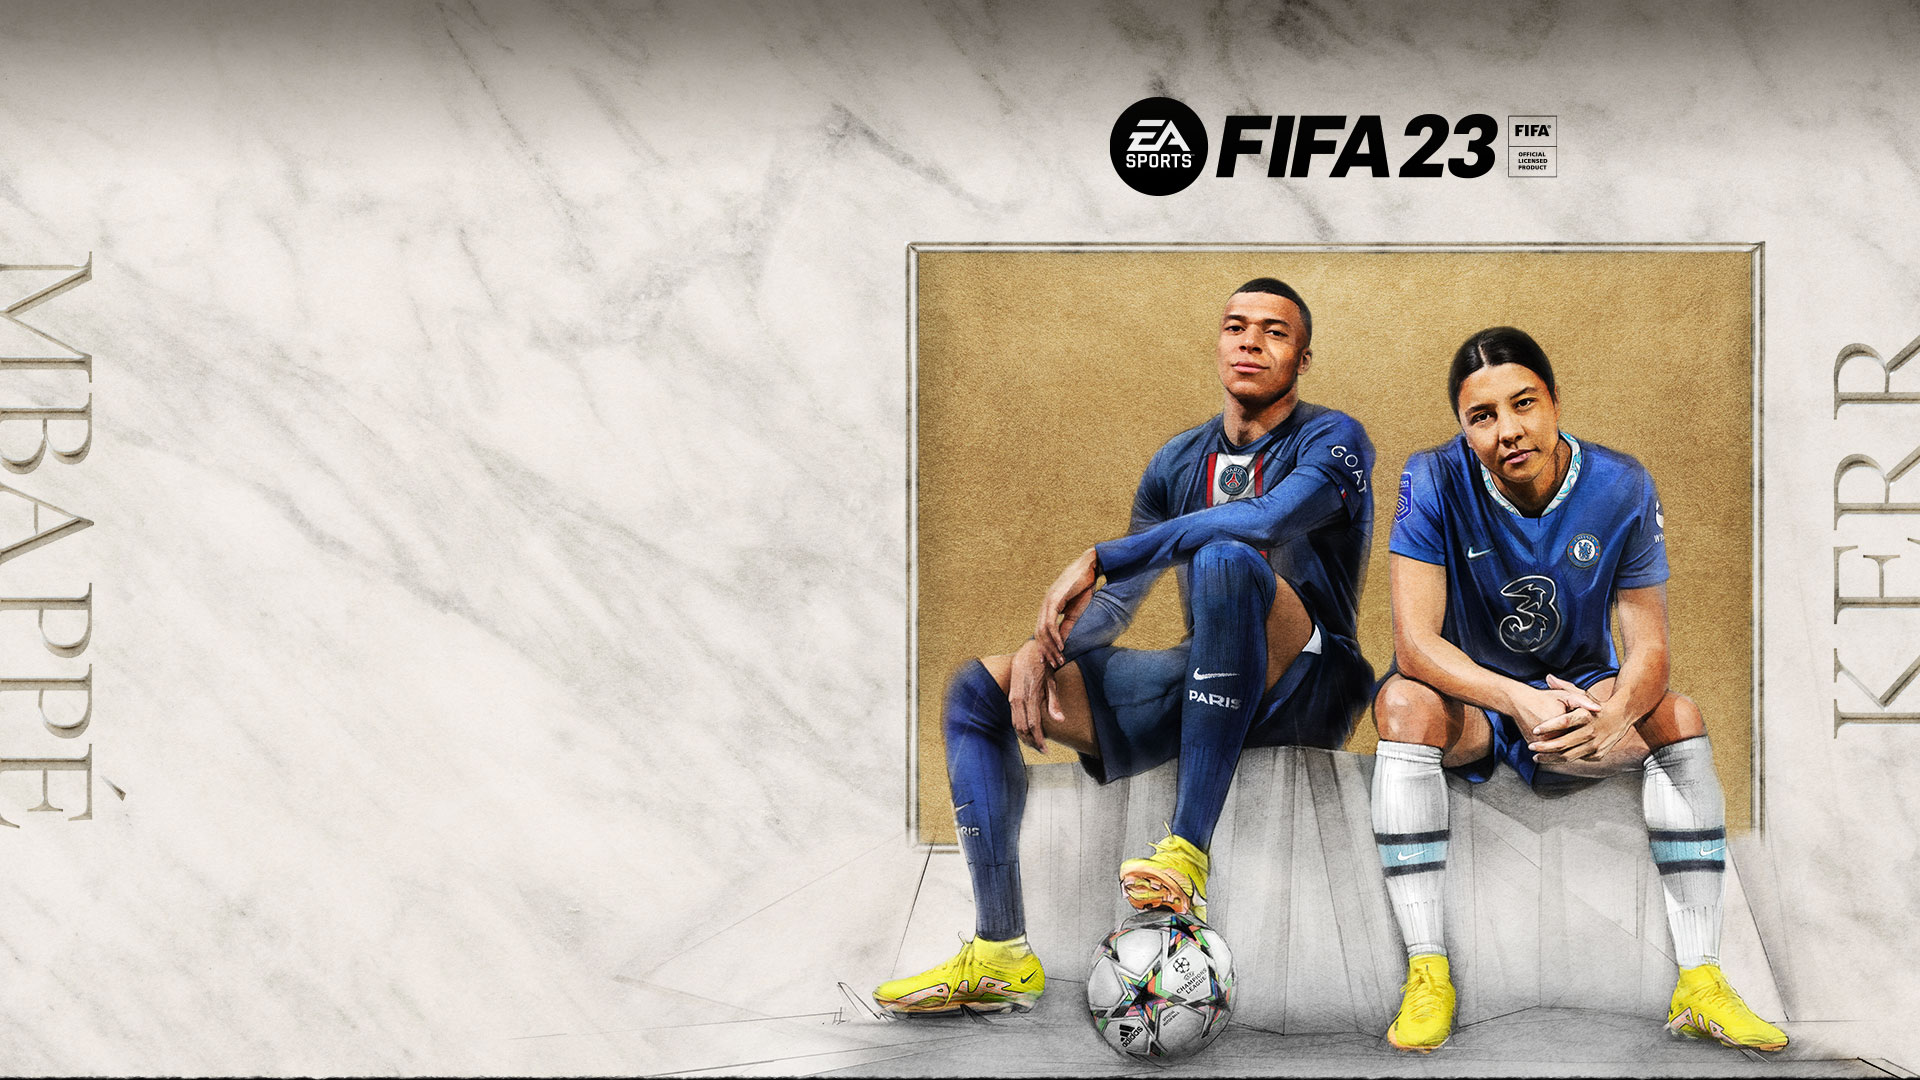 EA SPORTS FIFA 23, producto oficial con licencia de la FIFA, Mbappe, Kerr, dos jugadores se sientan en un banco cubierto con una tela frente a un tablero de corcho.